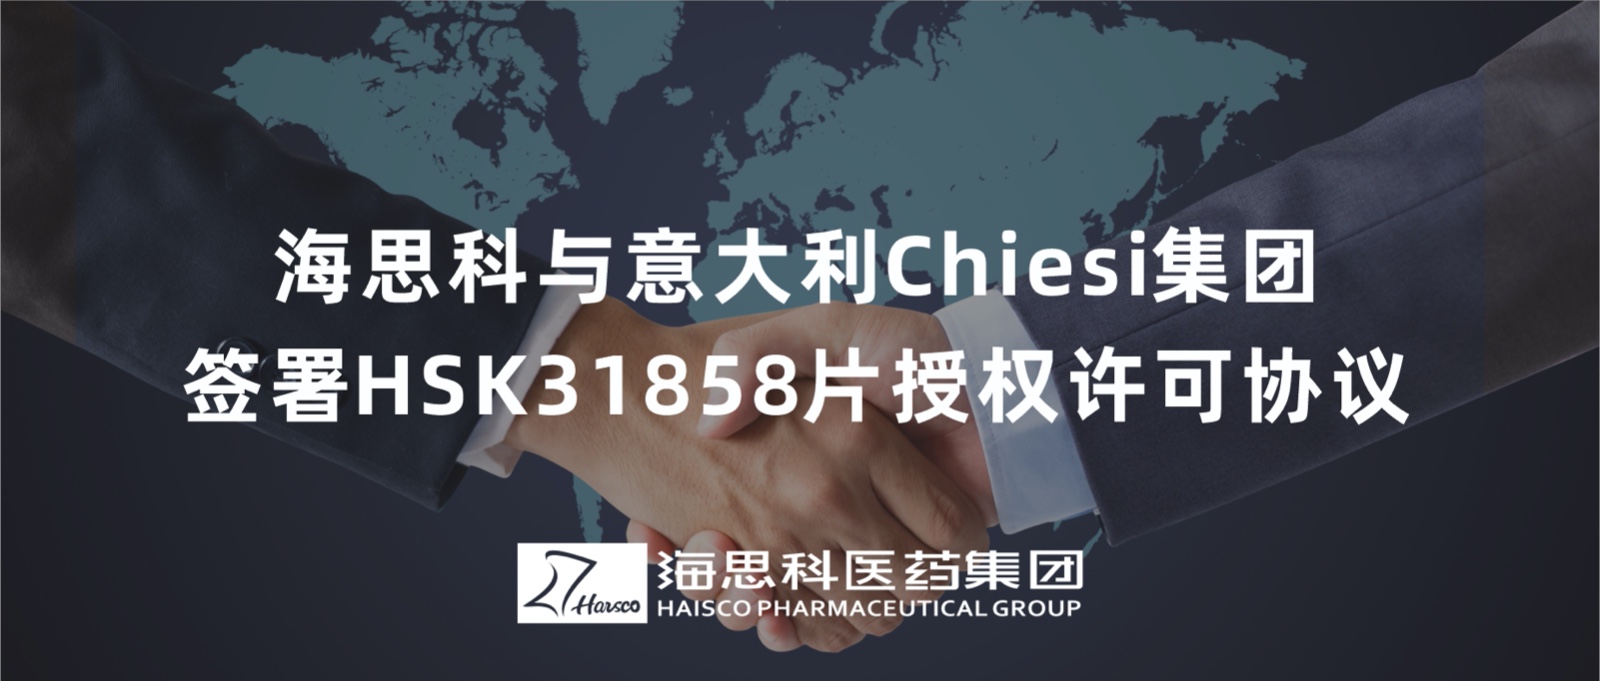 亚洲bet356官网与意大利Chiesi集团签署HSK31858片授权许可协议